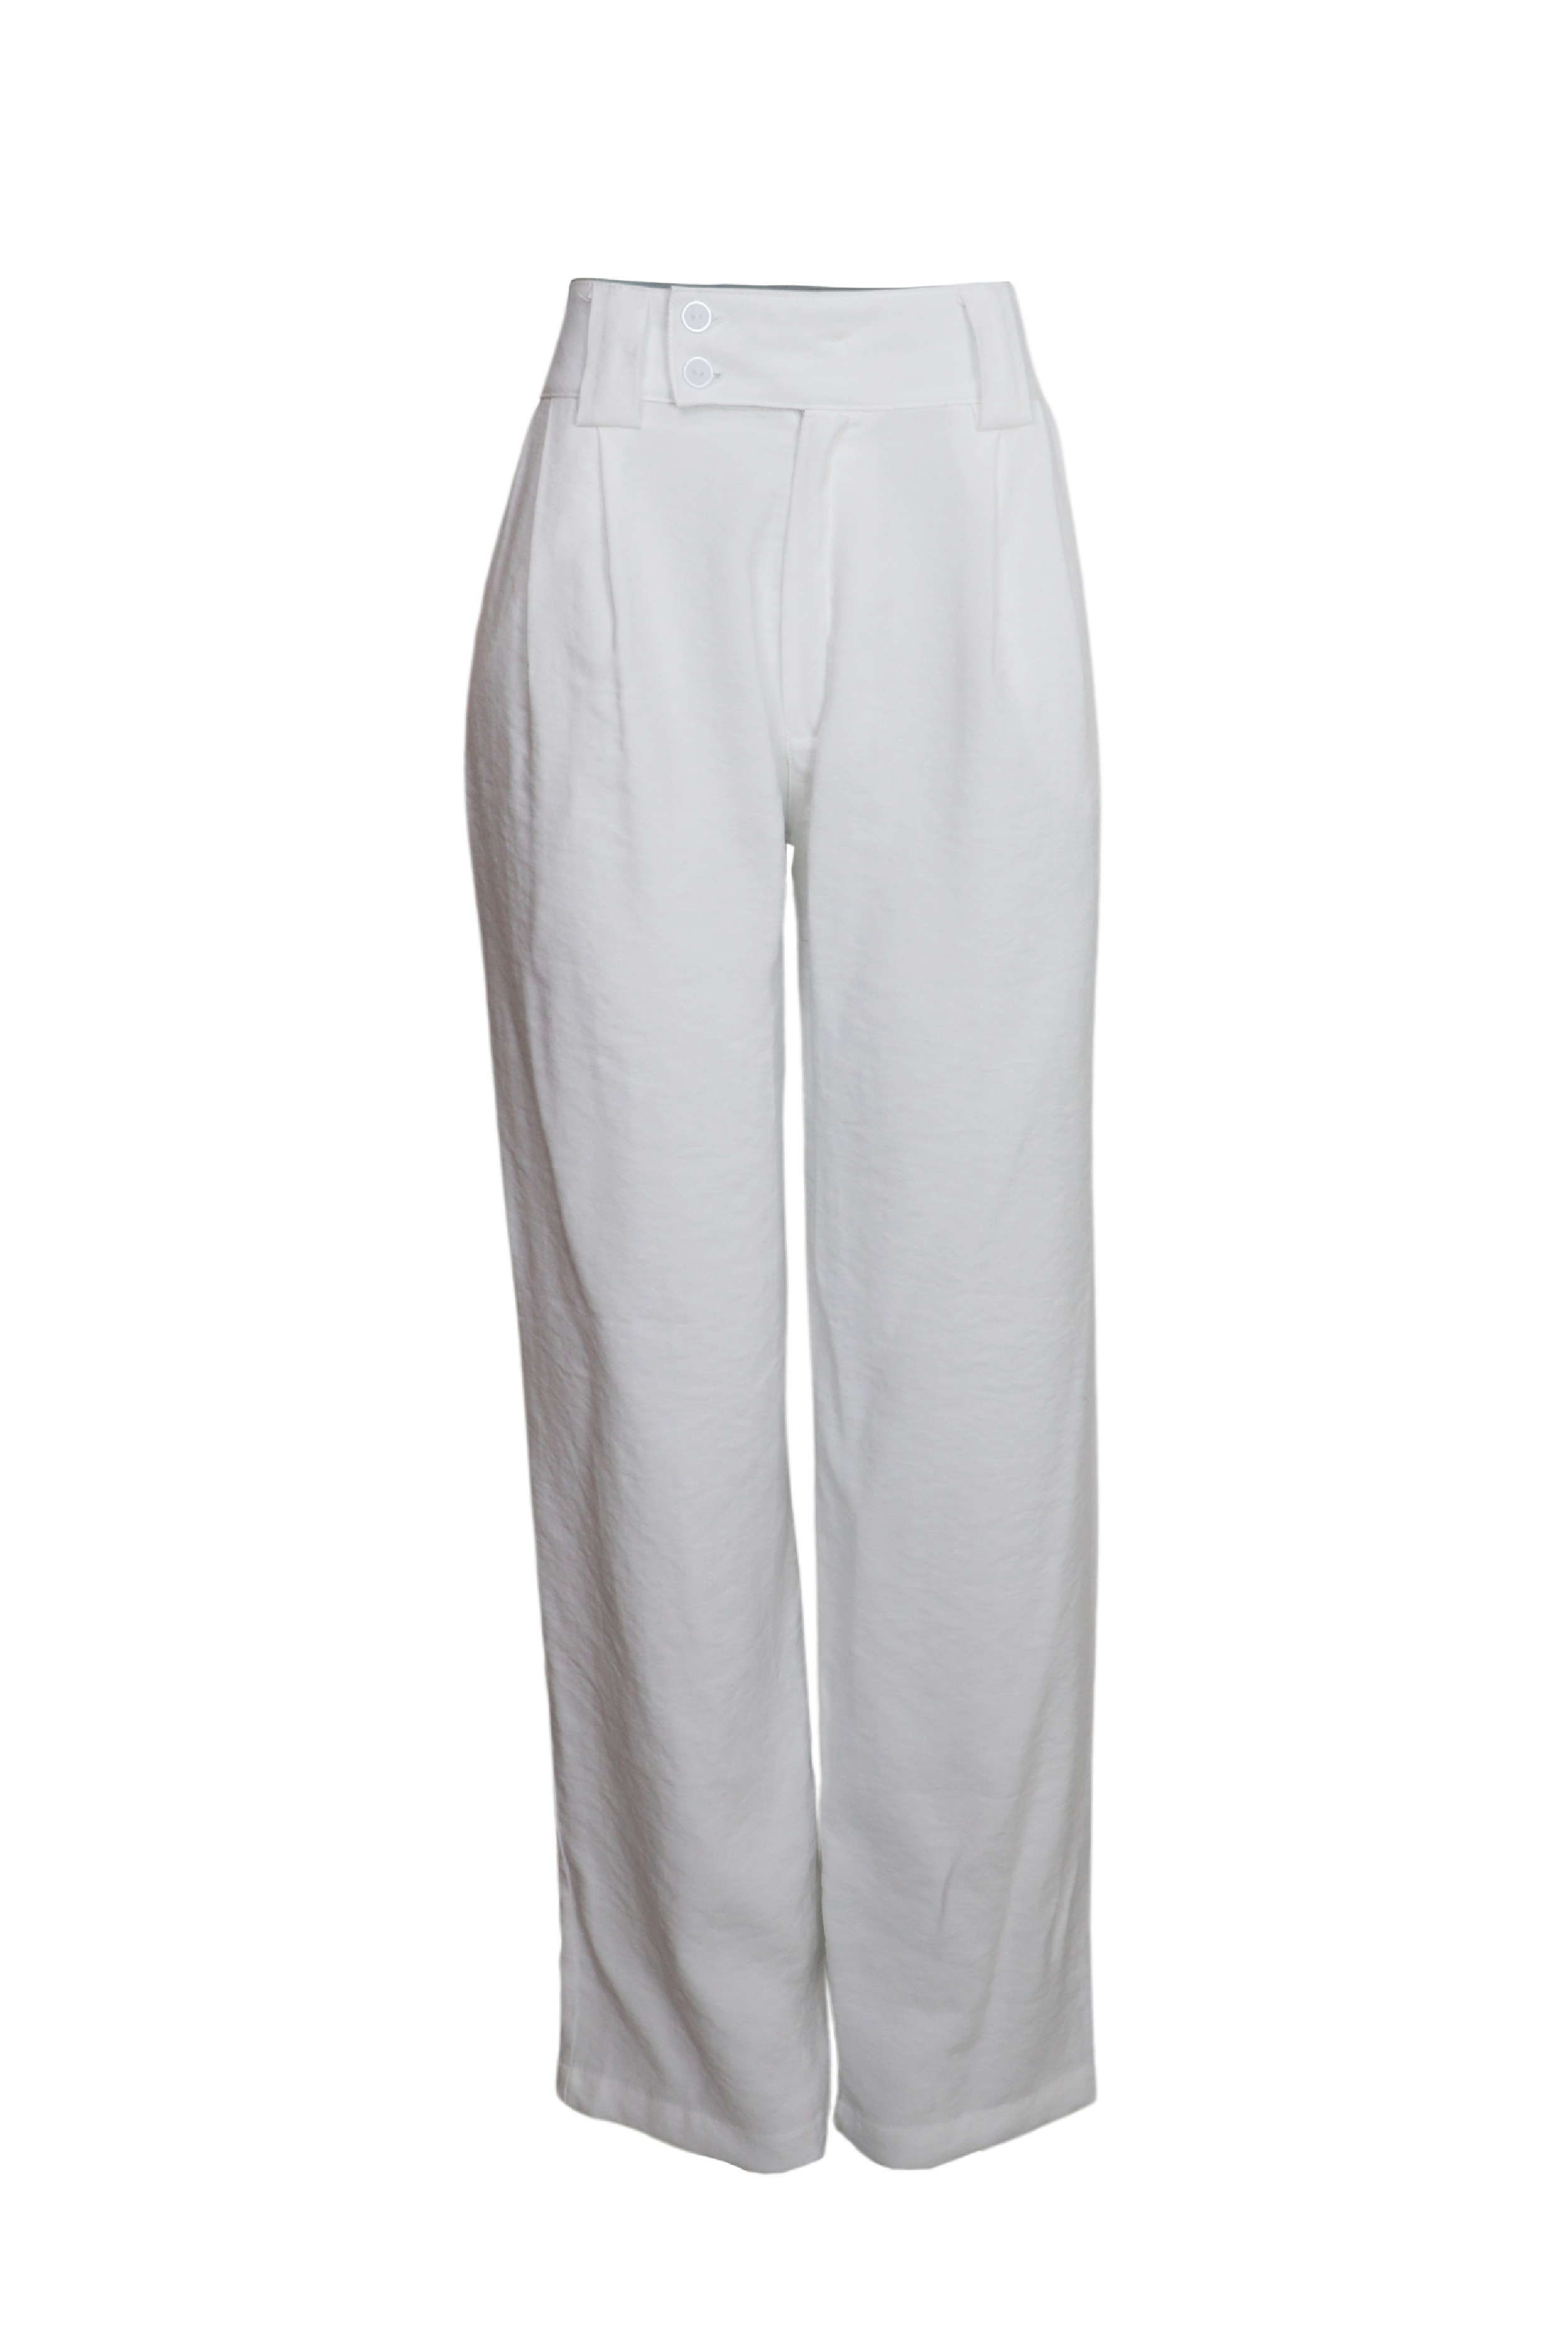 Hermoso pantalón con pretina ancha color blanco